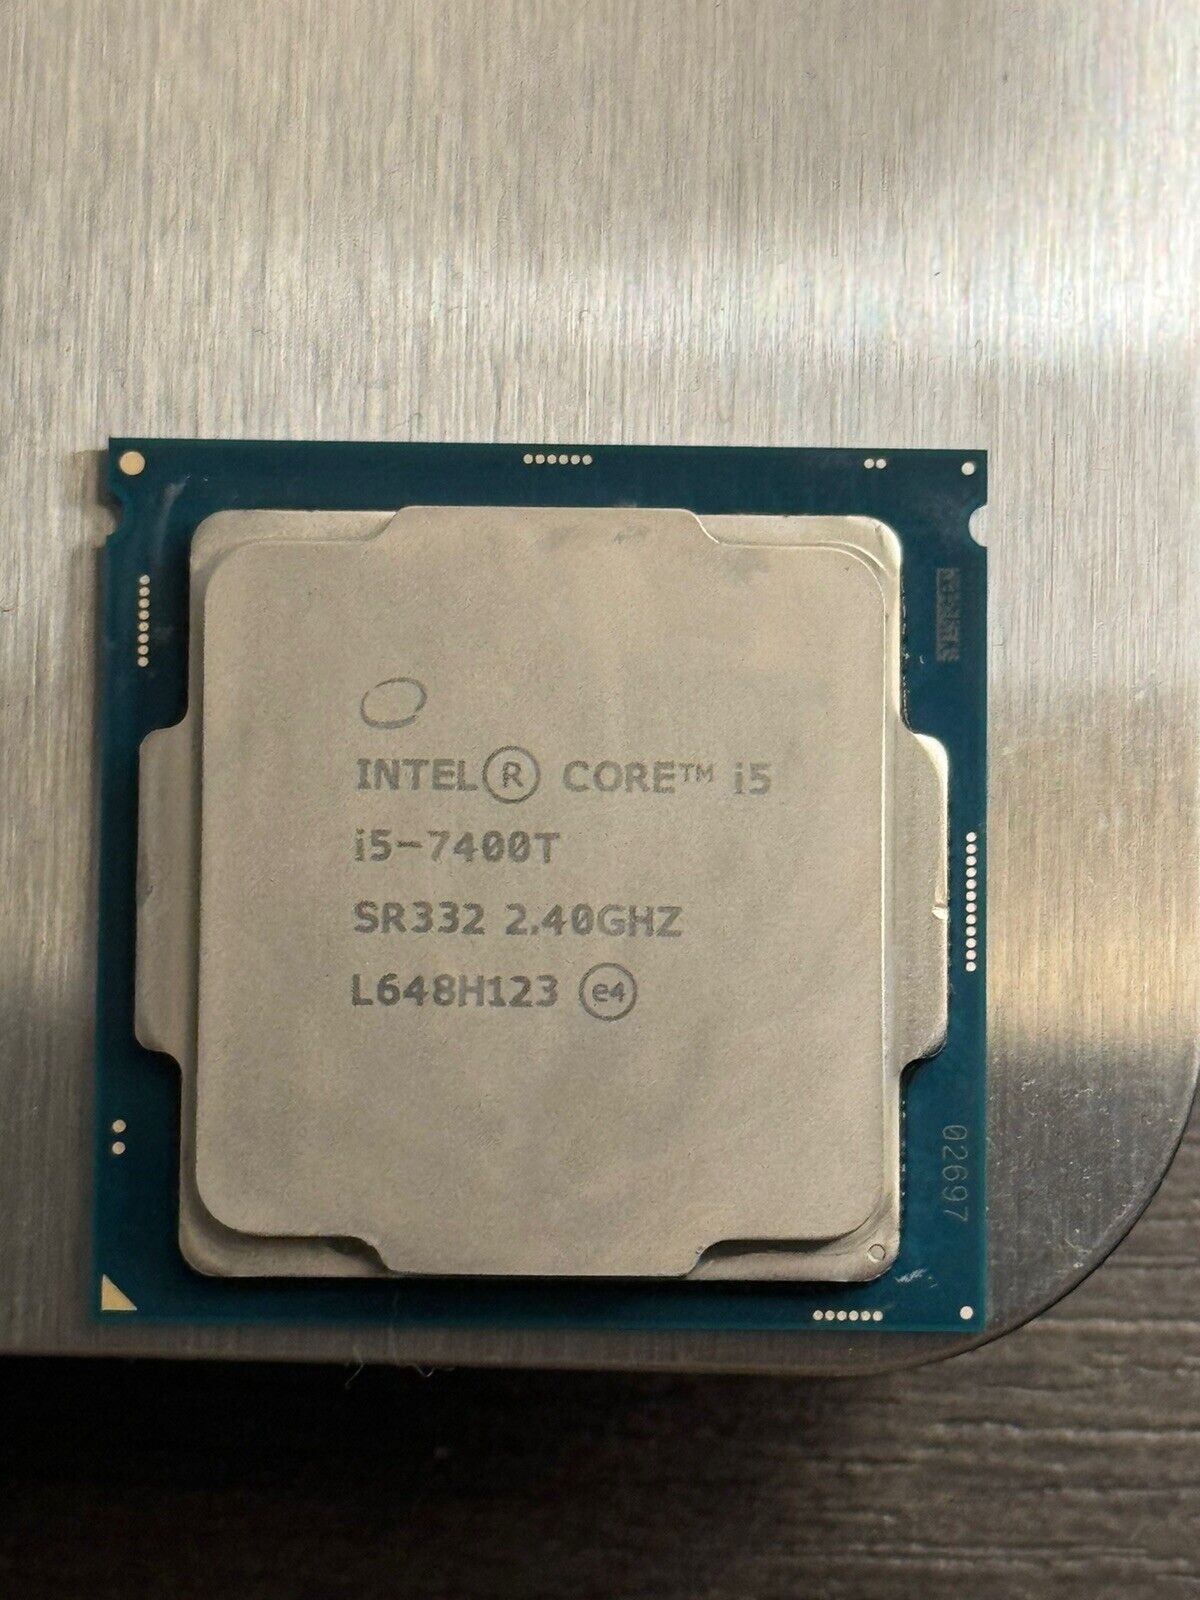 Intel Core i5-7400T 2.4 GHz Quad-Core (SR332) Processor (untested)